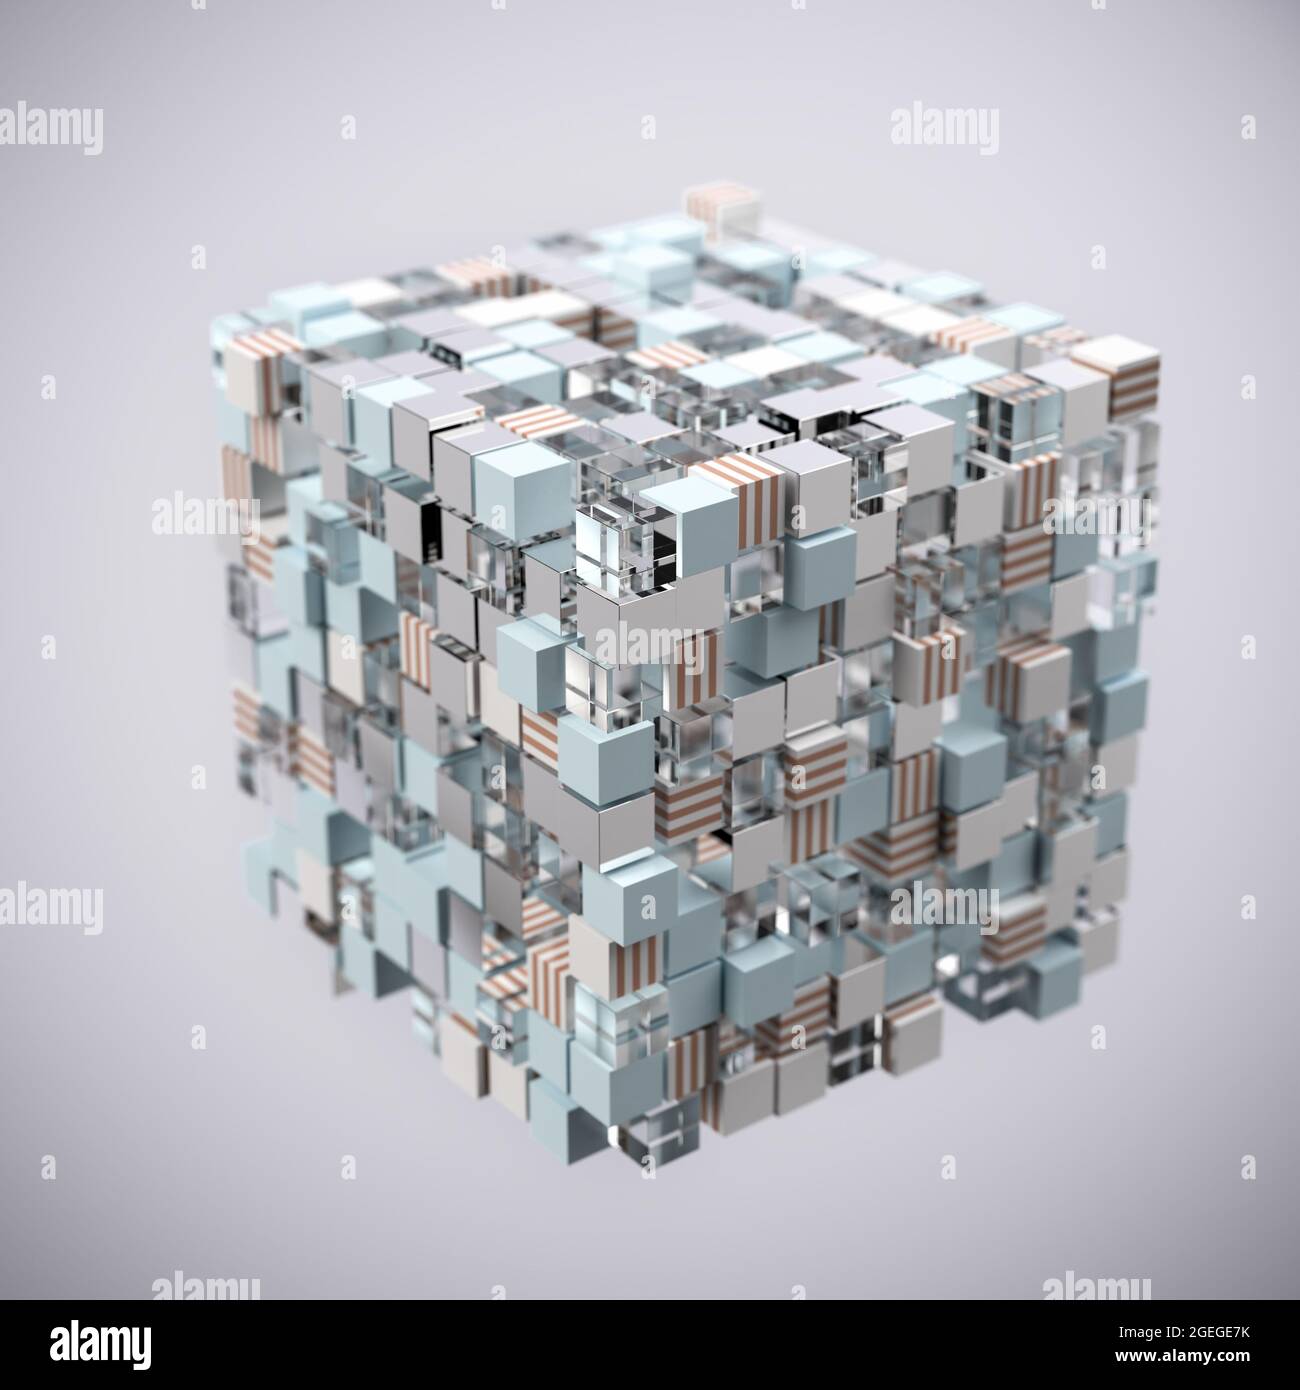 Un cube de cubes image abstraite avec quatre types différents de cubes : rayé, métallique, turquoise, verre. Certains cubes ont été déplacés. Concept de diversité ou comp Banque D'Images